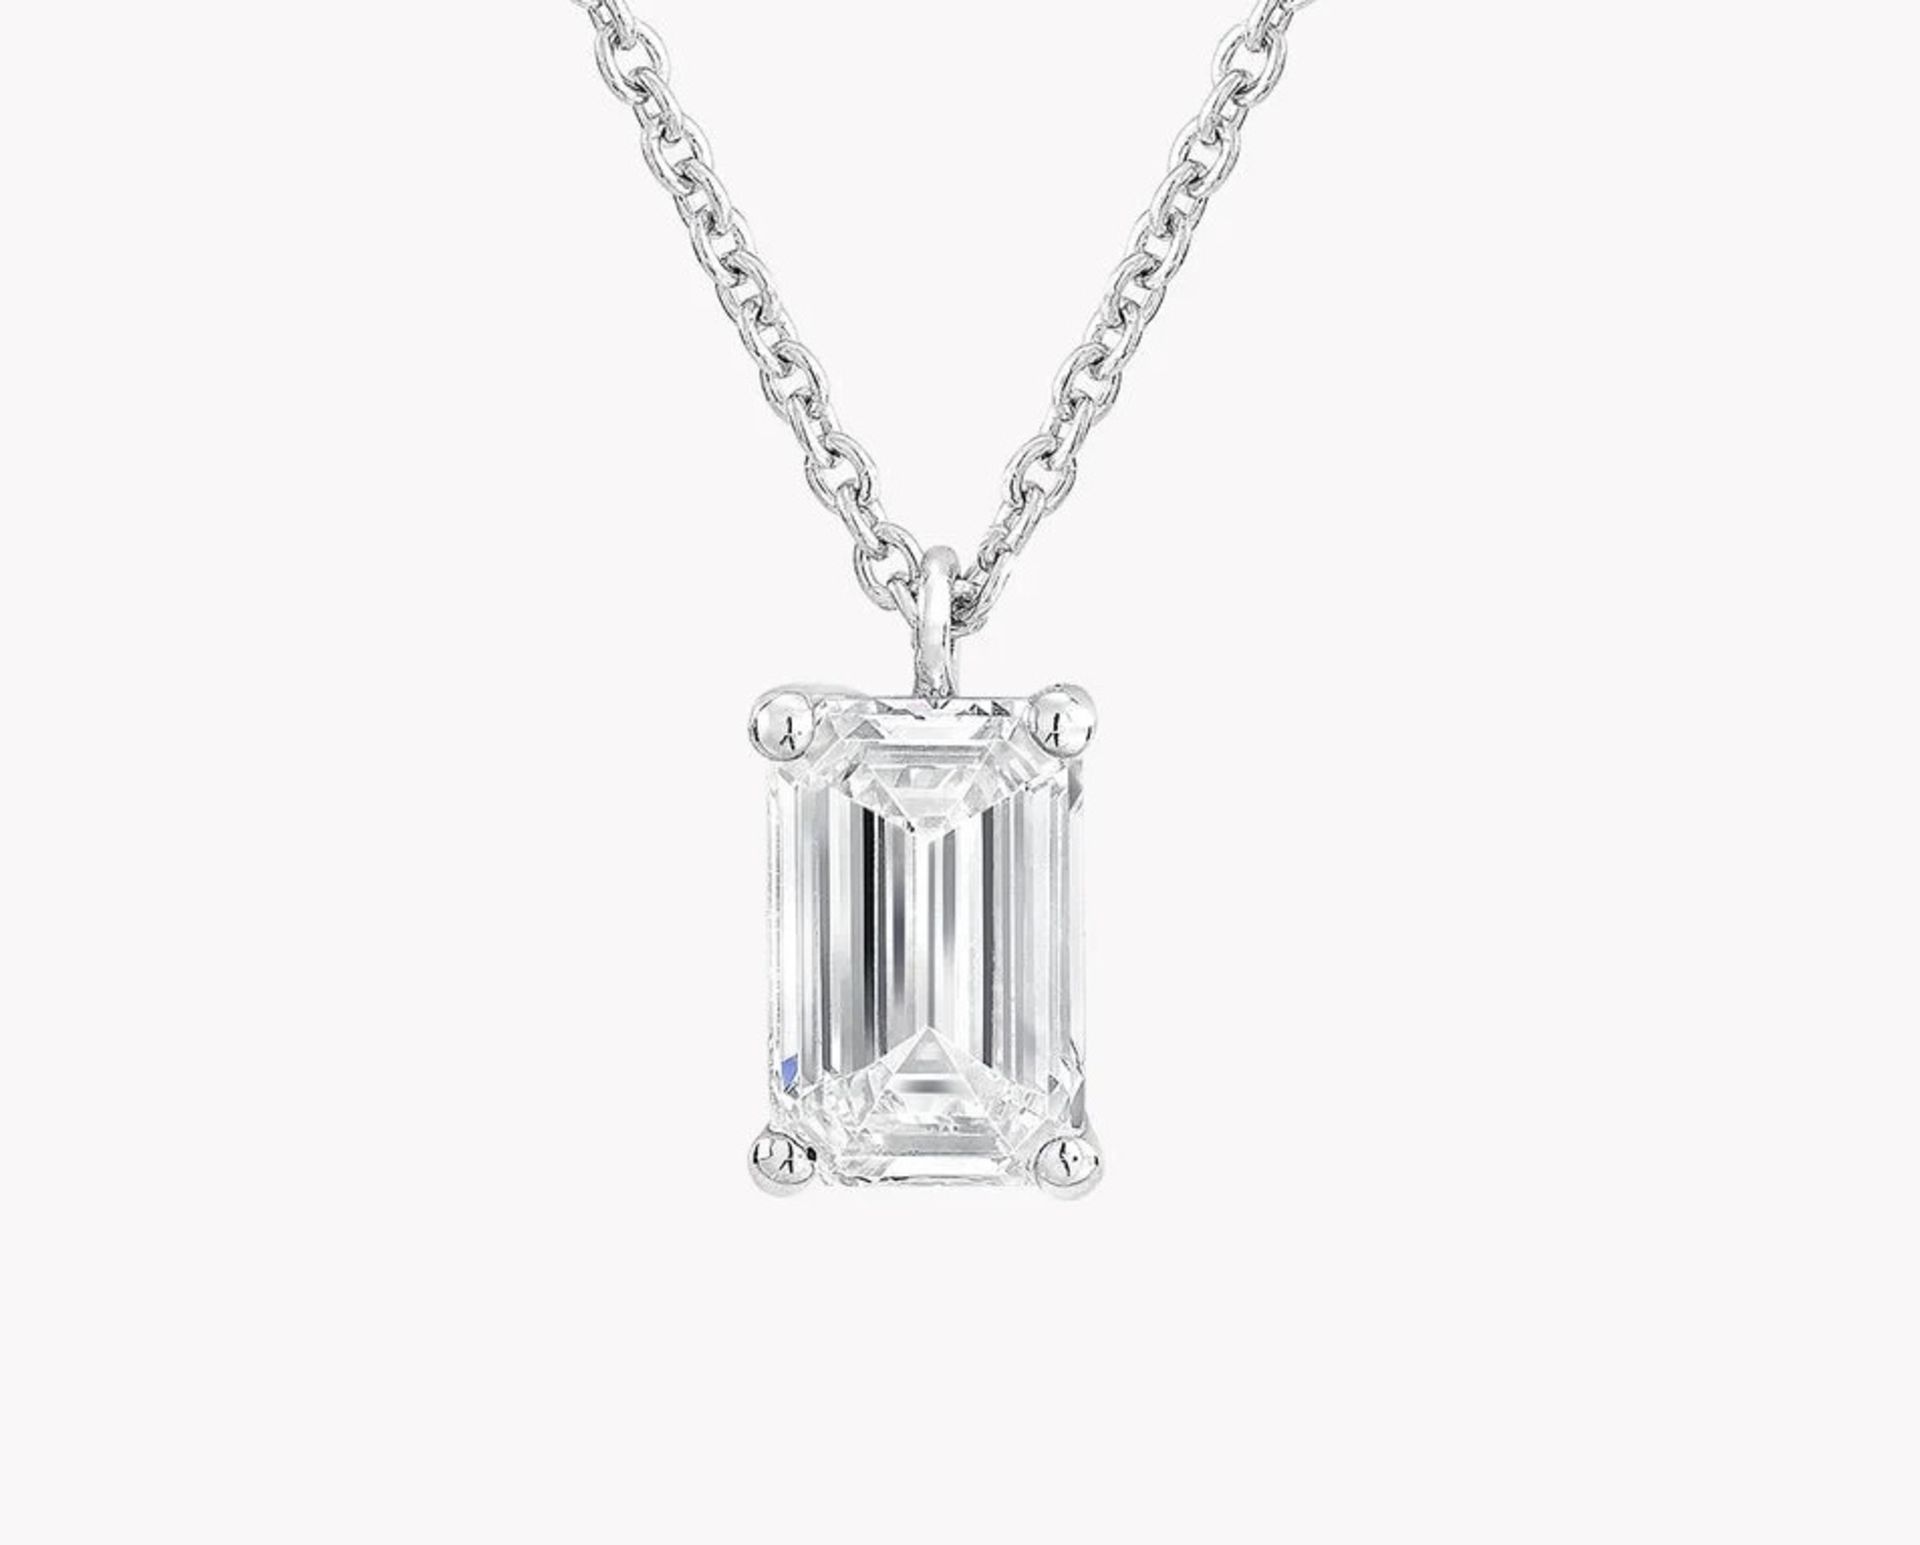 Emerald Cut Diamond 2.00 Carat D Colour VVS2 Clarity - Necklace Pendant - 18kt White Gold -IGI